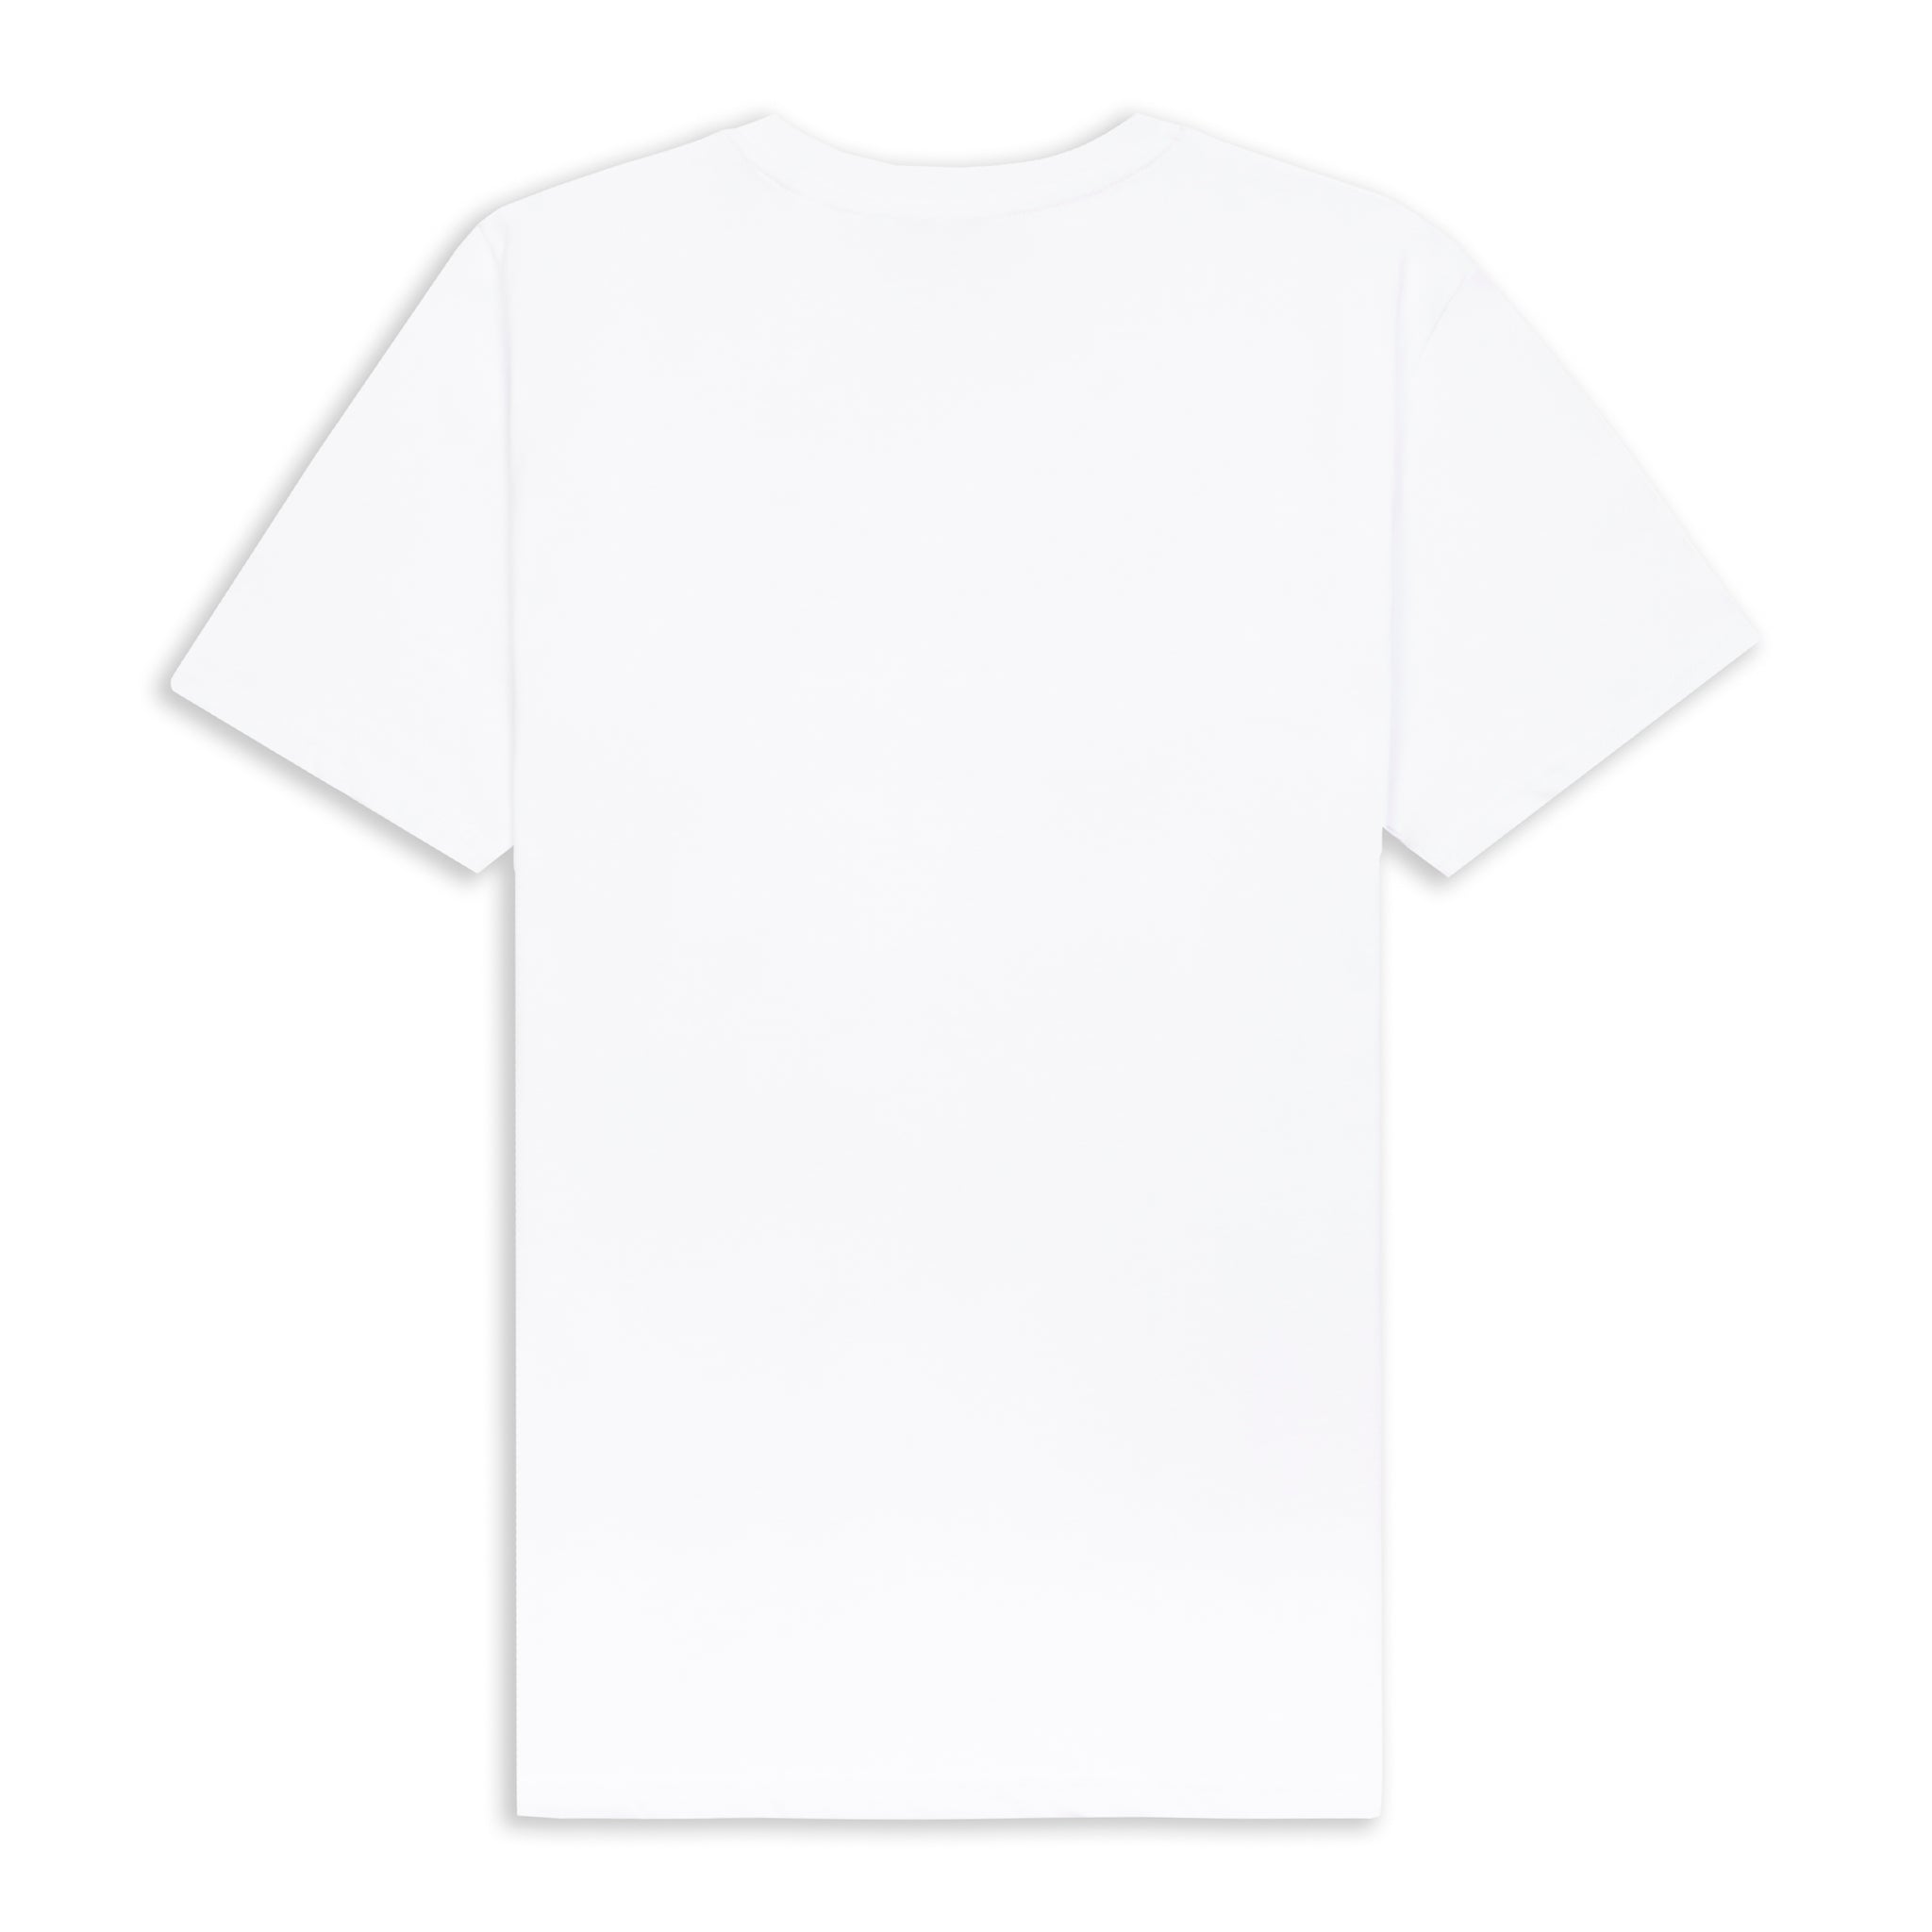 Tom Cridland LP Logo 30 Year™ T-Shirt